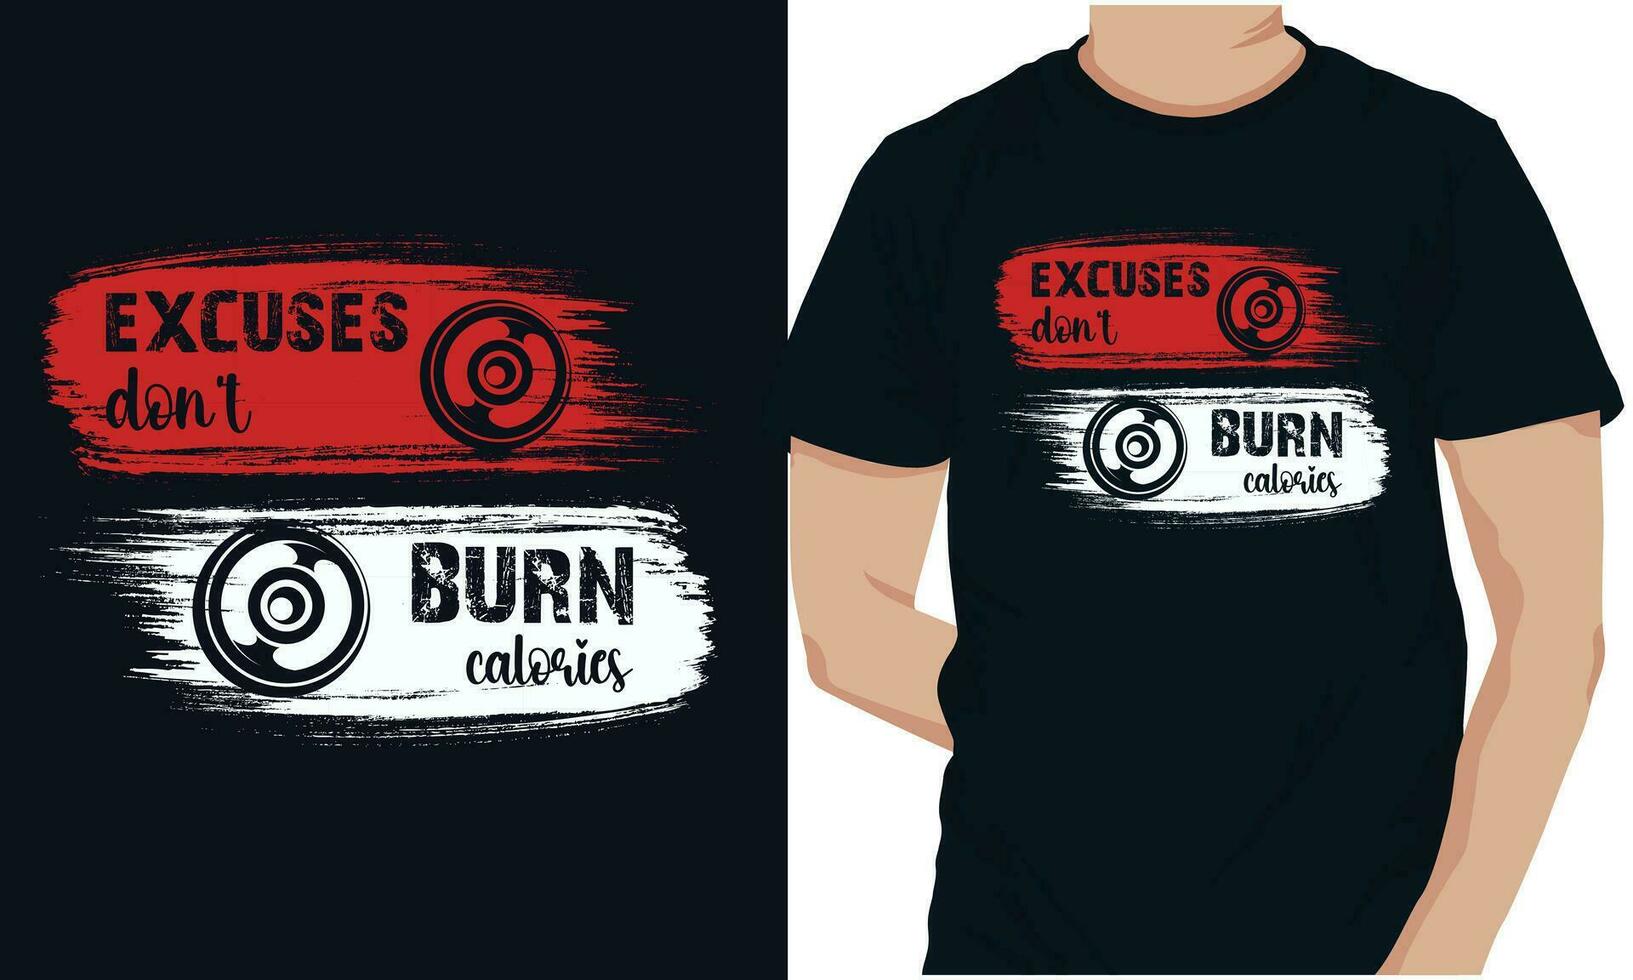 des excuses Don t brûler calories Gym aptitude t-shirts conception vecteur